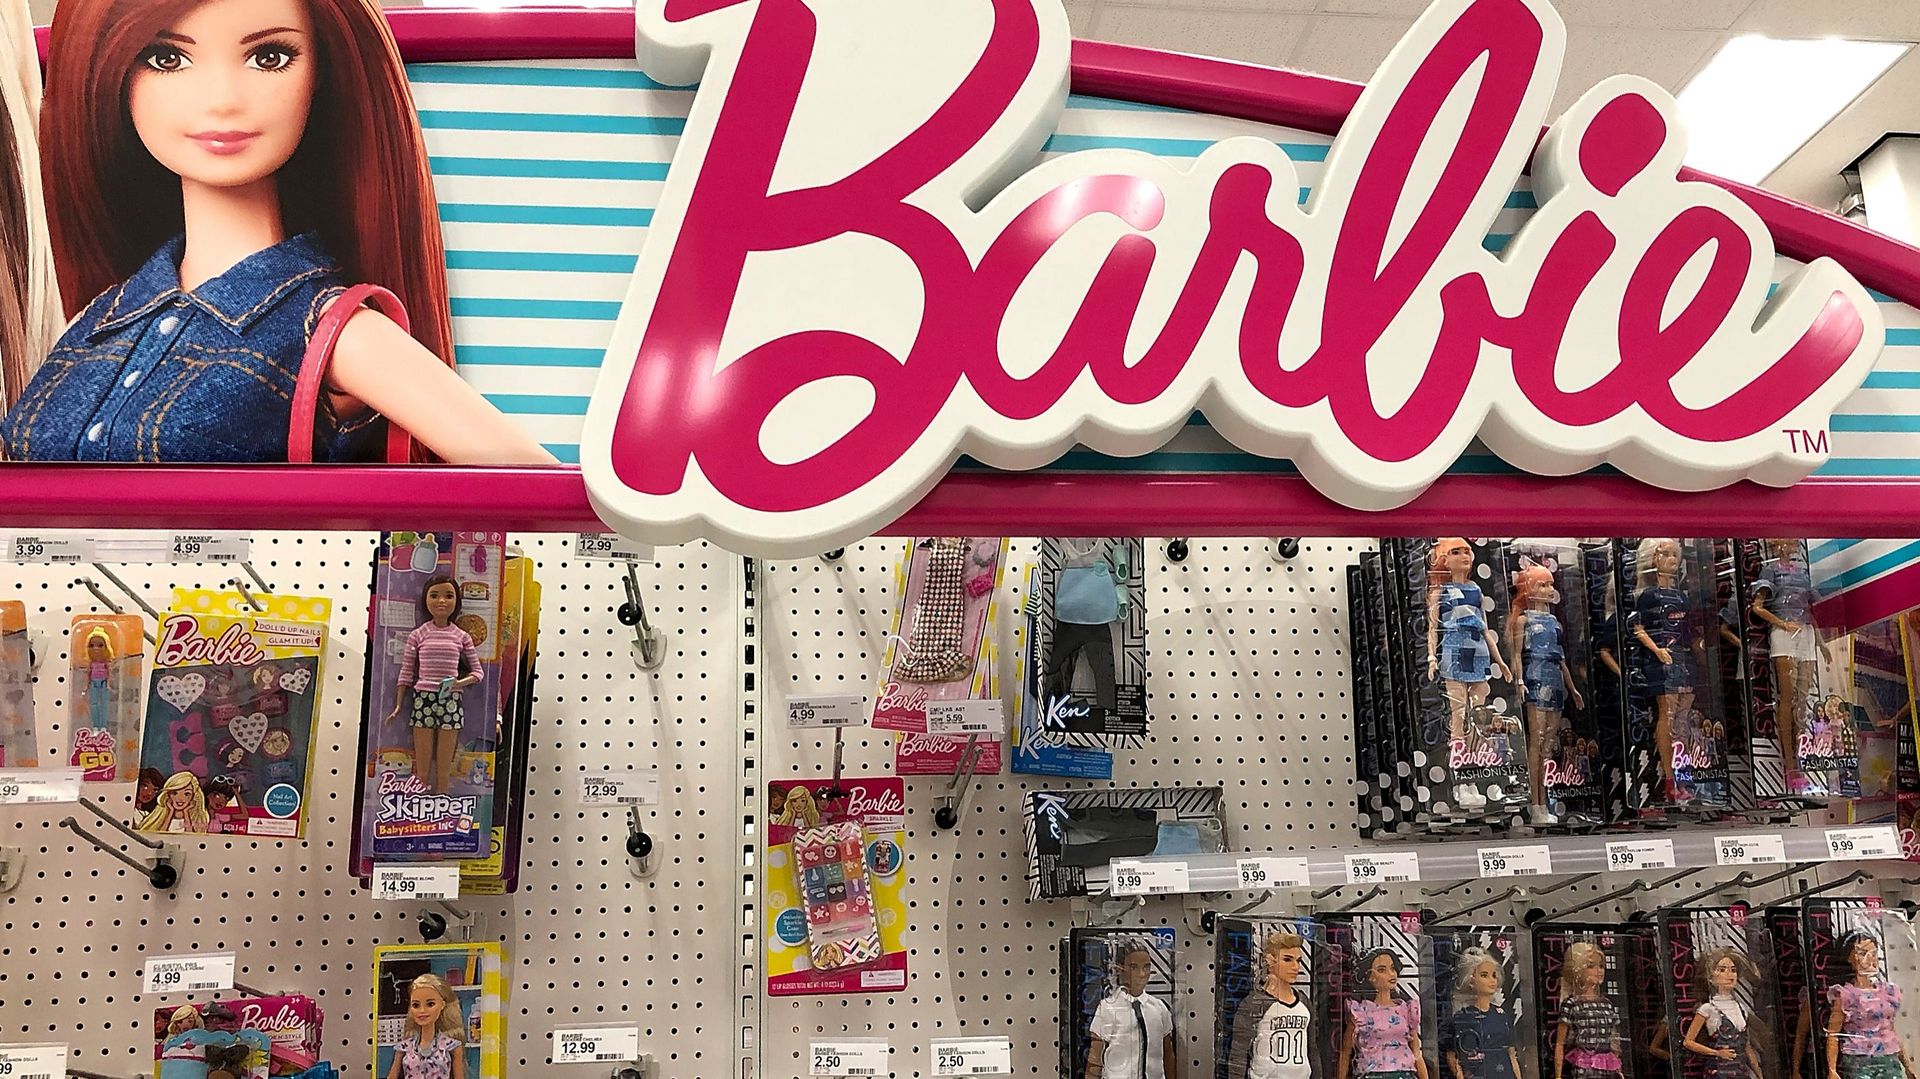 Plus d'inclusion à l'occasion des 60 ans de Barbie.